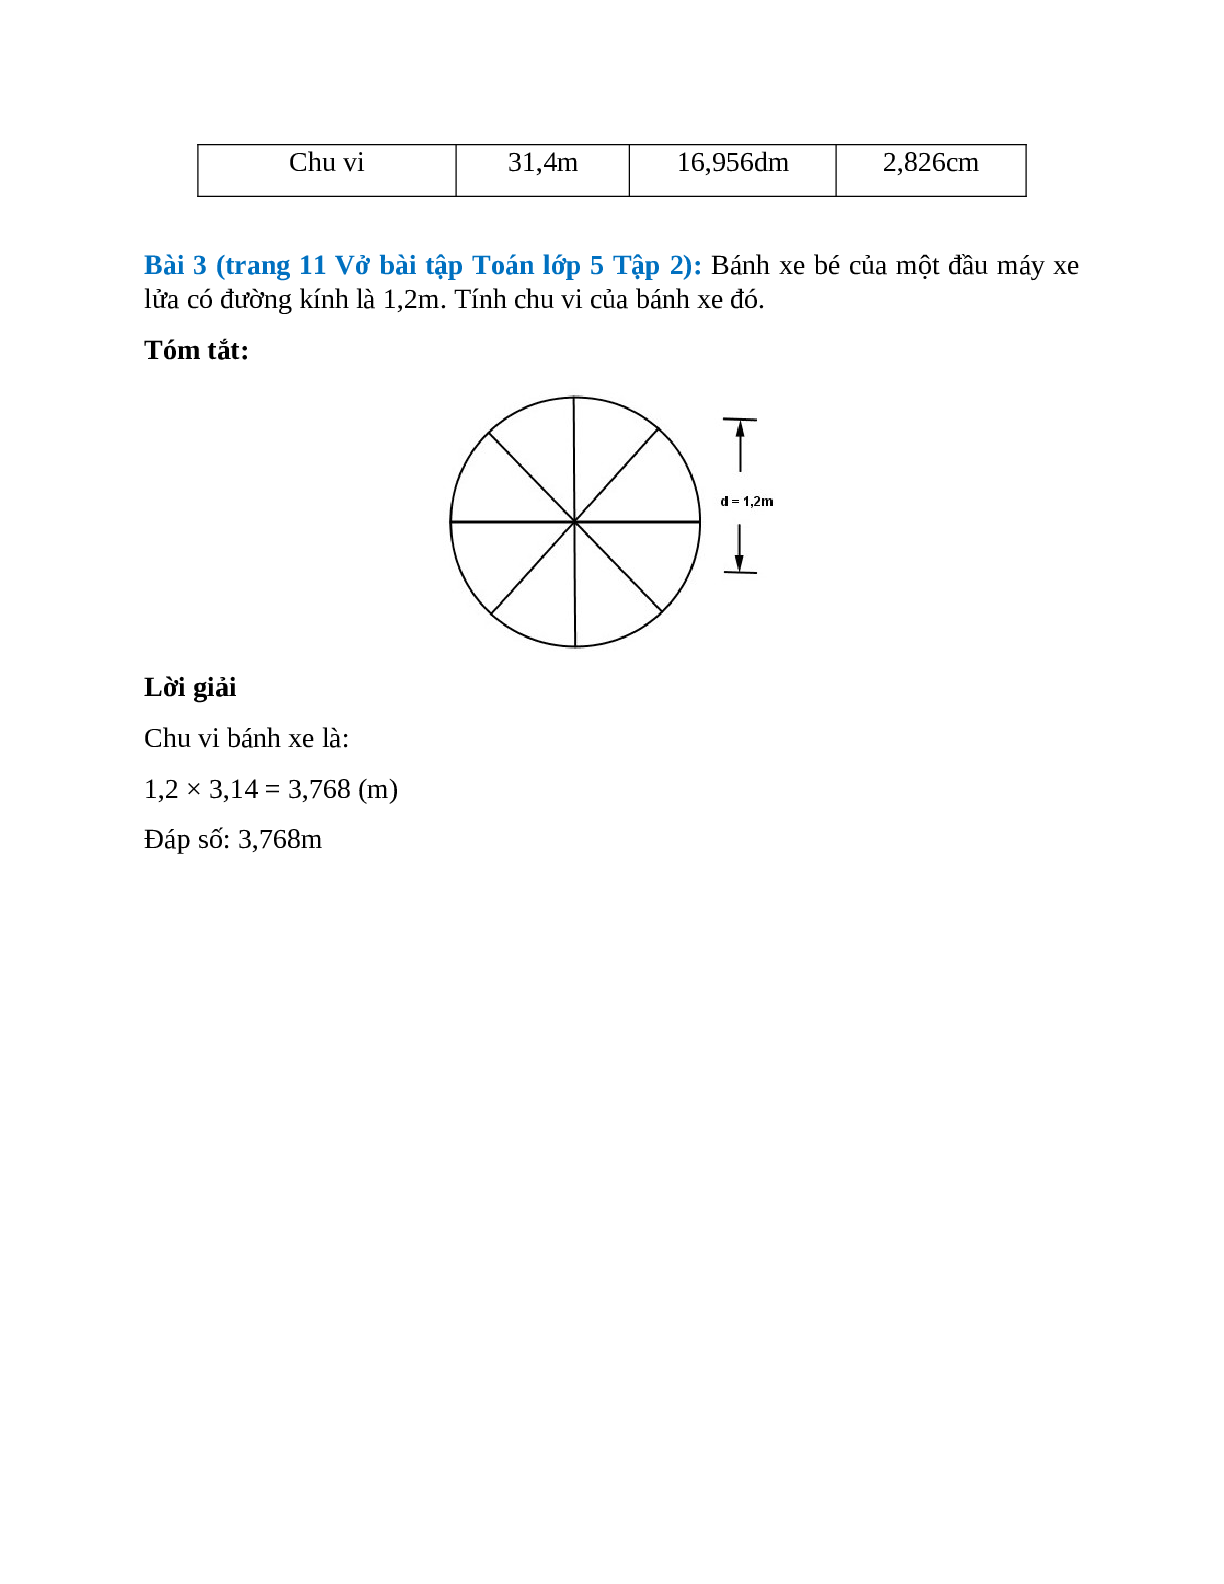 Vở bài tập Toán lớp 5 Tập 2 trang 11 Bài 95: Chu vi hình tròn (trang 2)